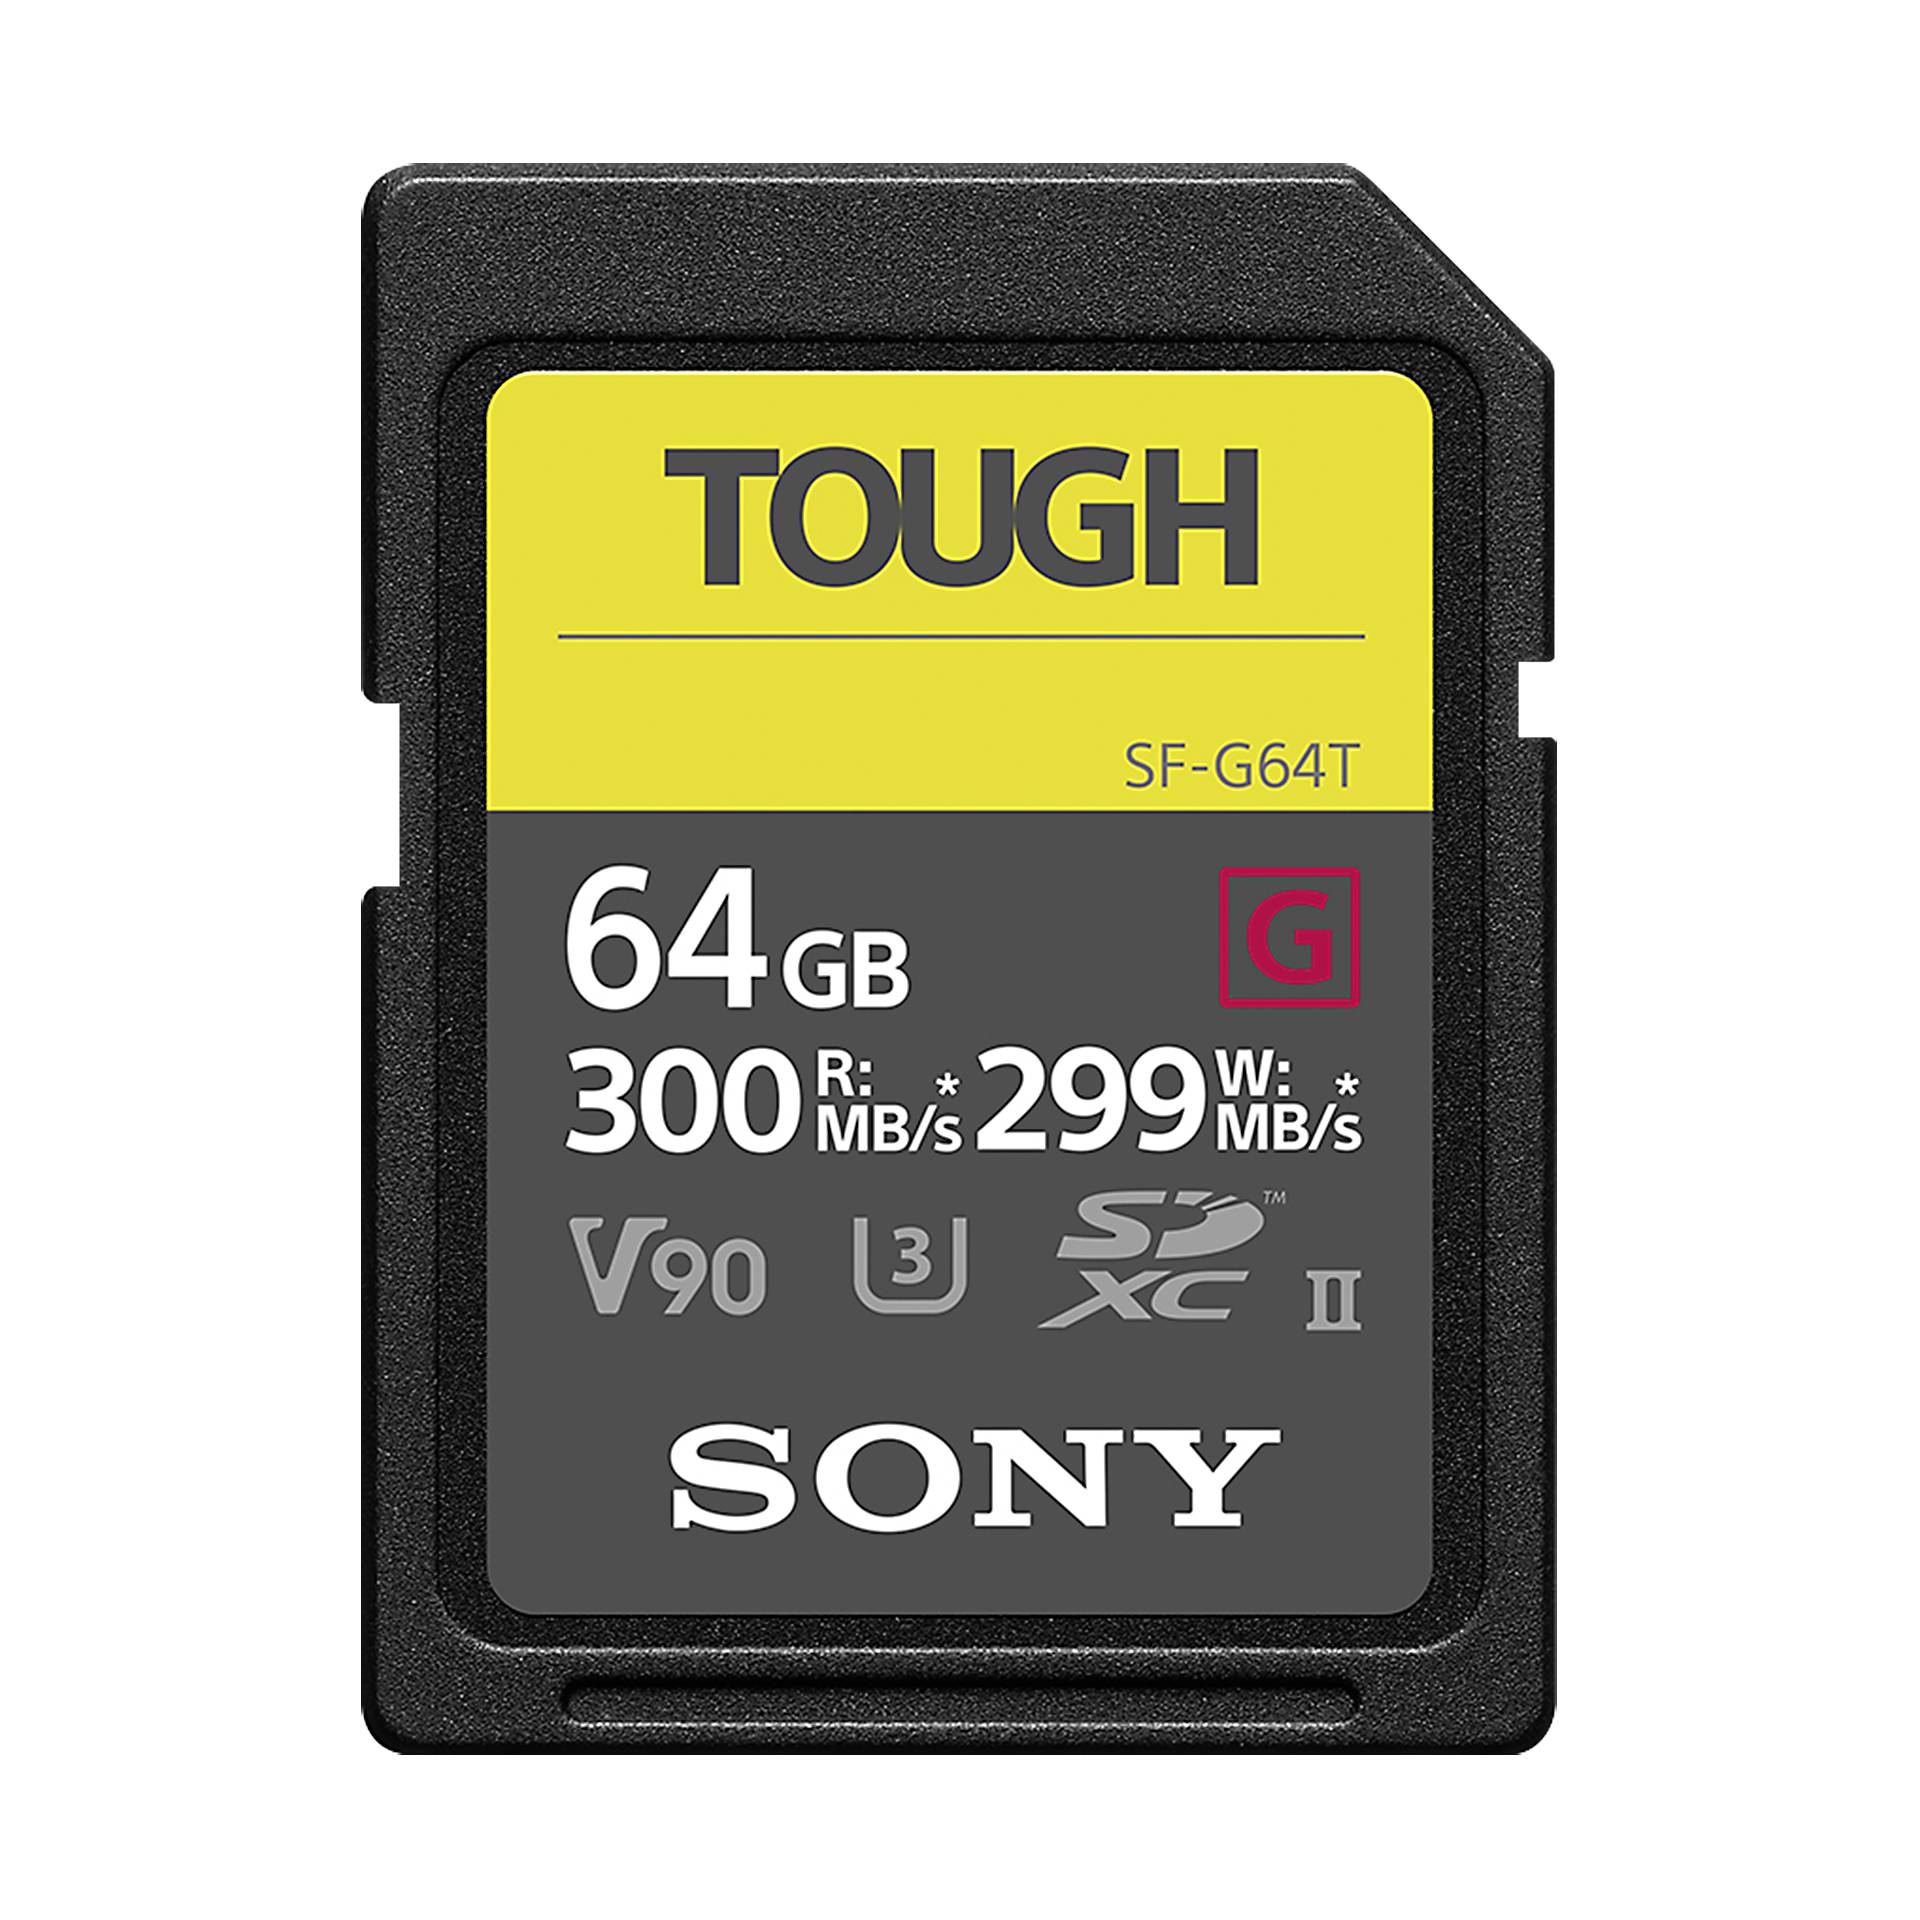 Sony SDXC G Tough series    64GB Class 10 UHS-II U3